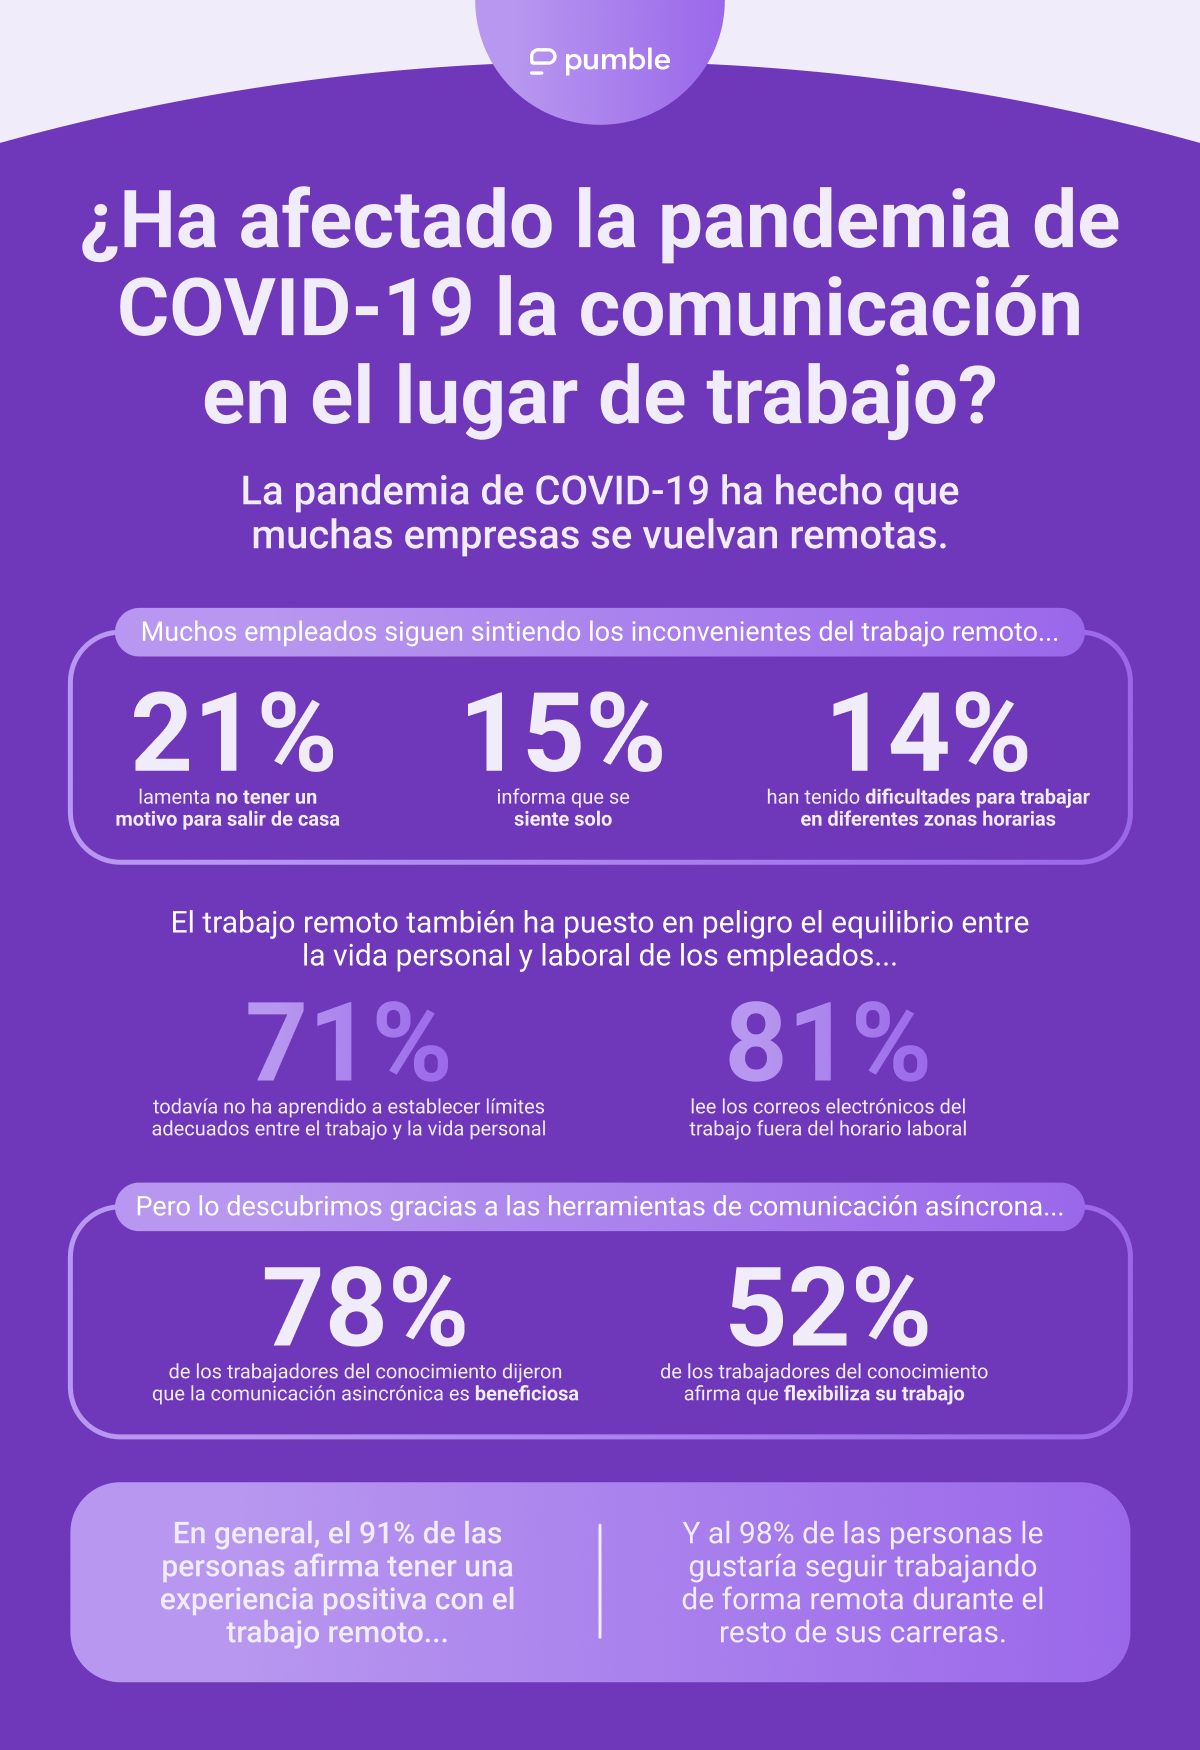 ¿Ha afectado la pandemia de COVID-19 la comunicación en el lugar de trabajo?